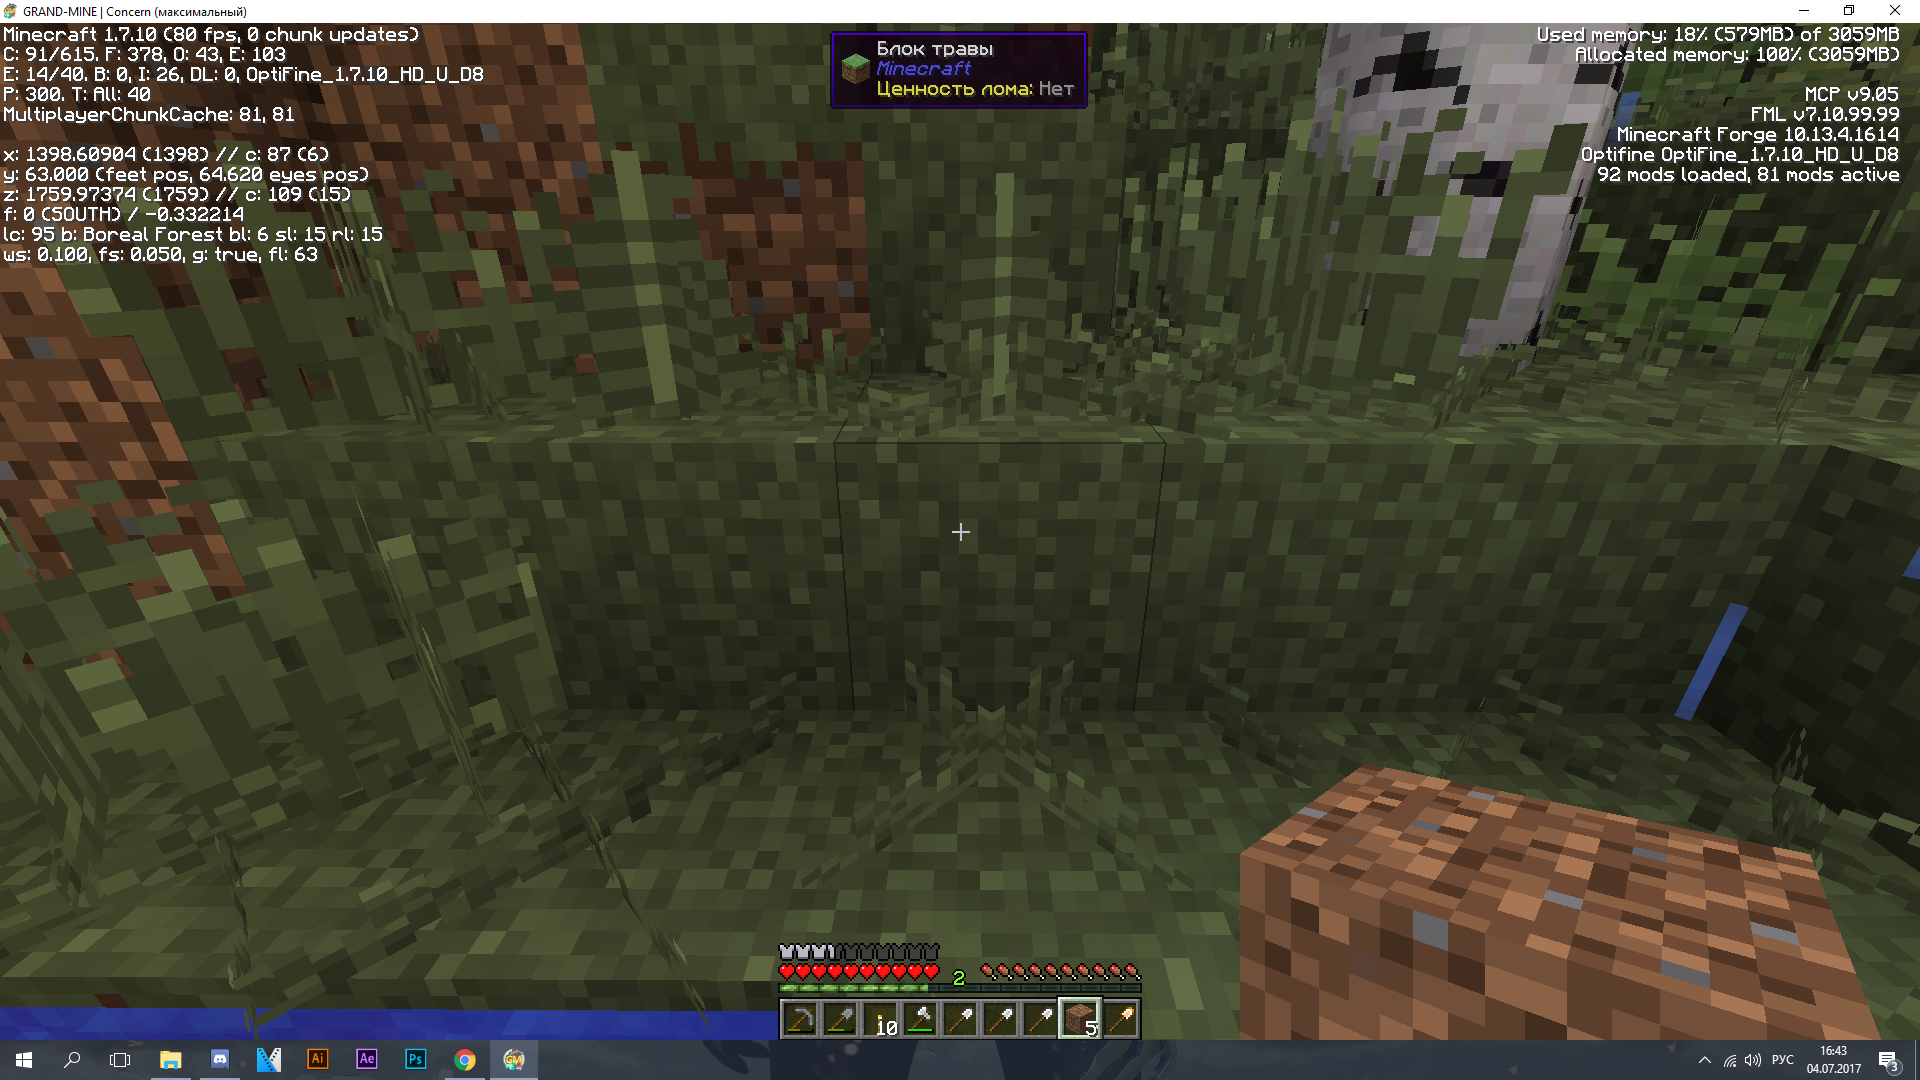 Как убрать литые блоки травы? - вопрос решен - | Grand-Mine - Игровые  серверы Minecraft ☮️